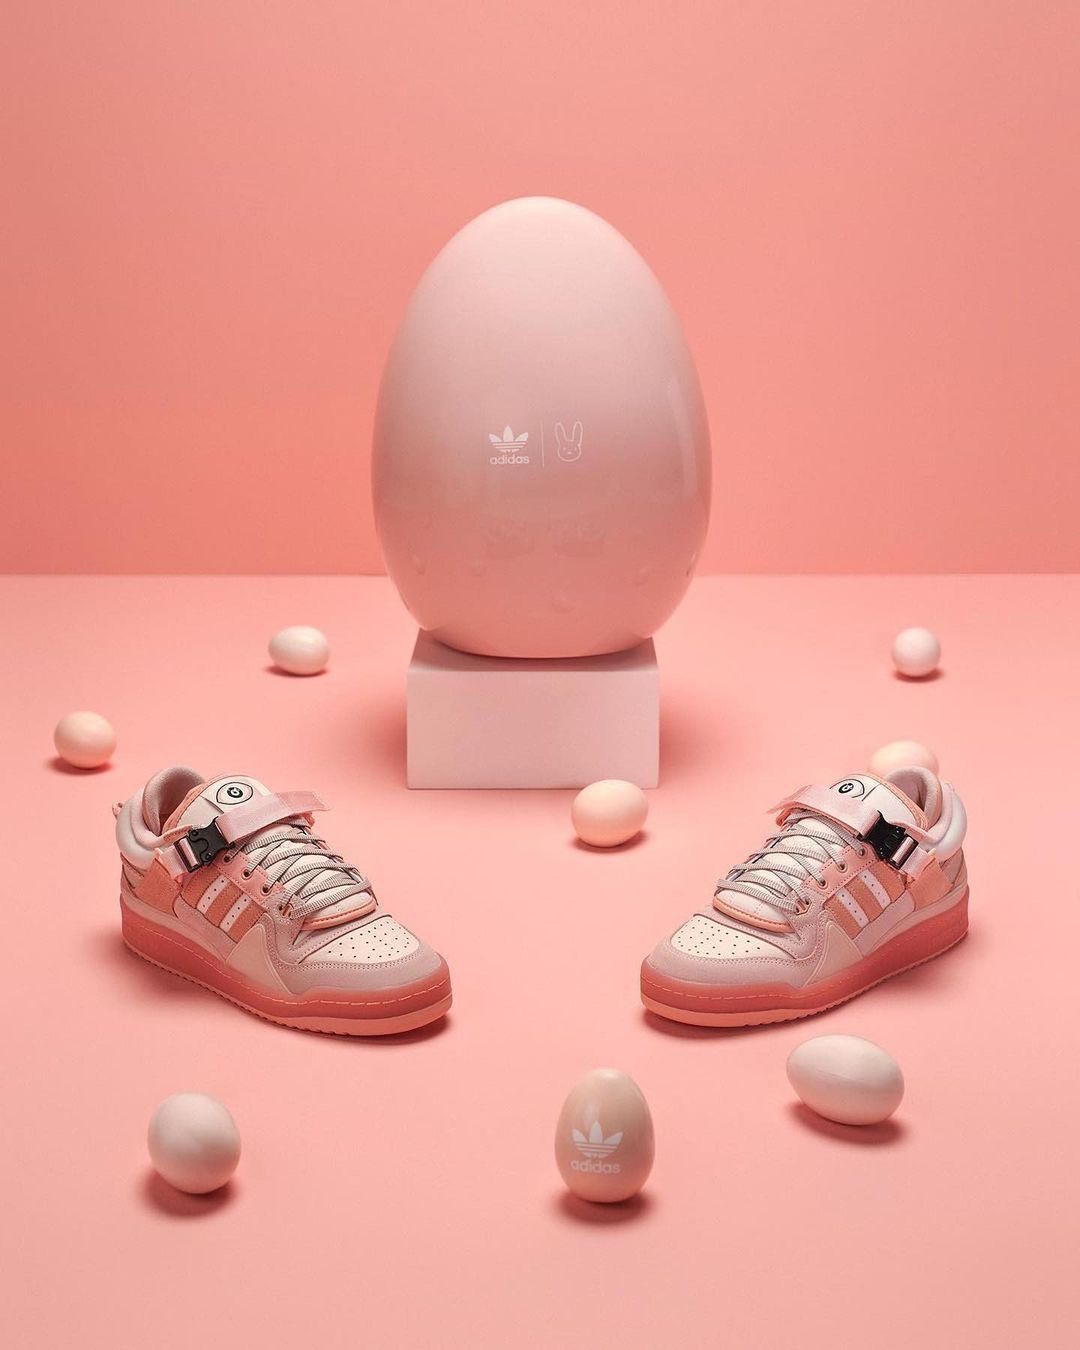 adidas Originals y Bad Bunny lanzan nuevo diseño de la silueta "Easter Egg" Forum Low adidas Colombia Kordon.co